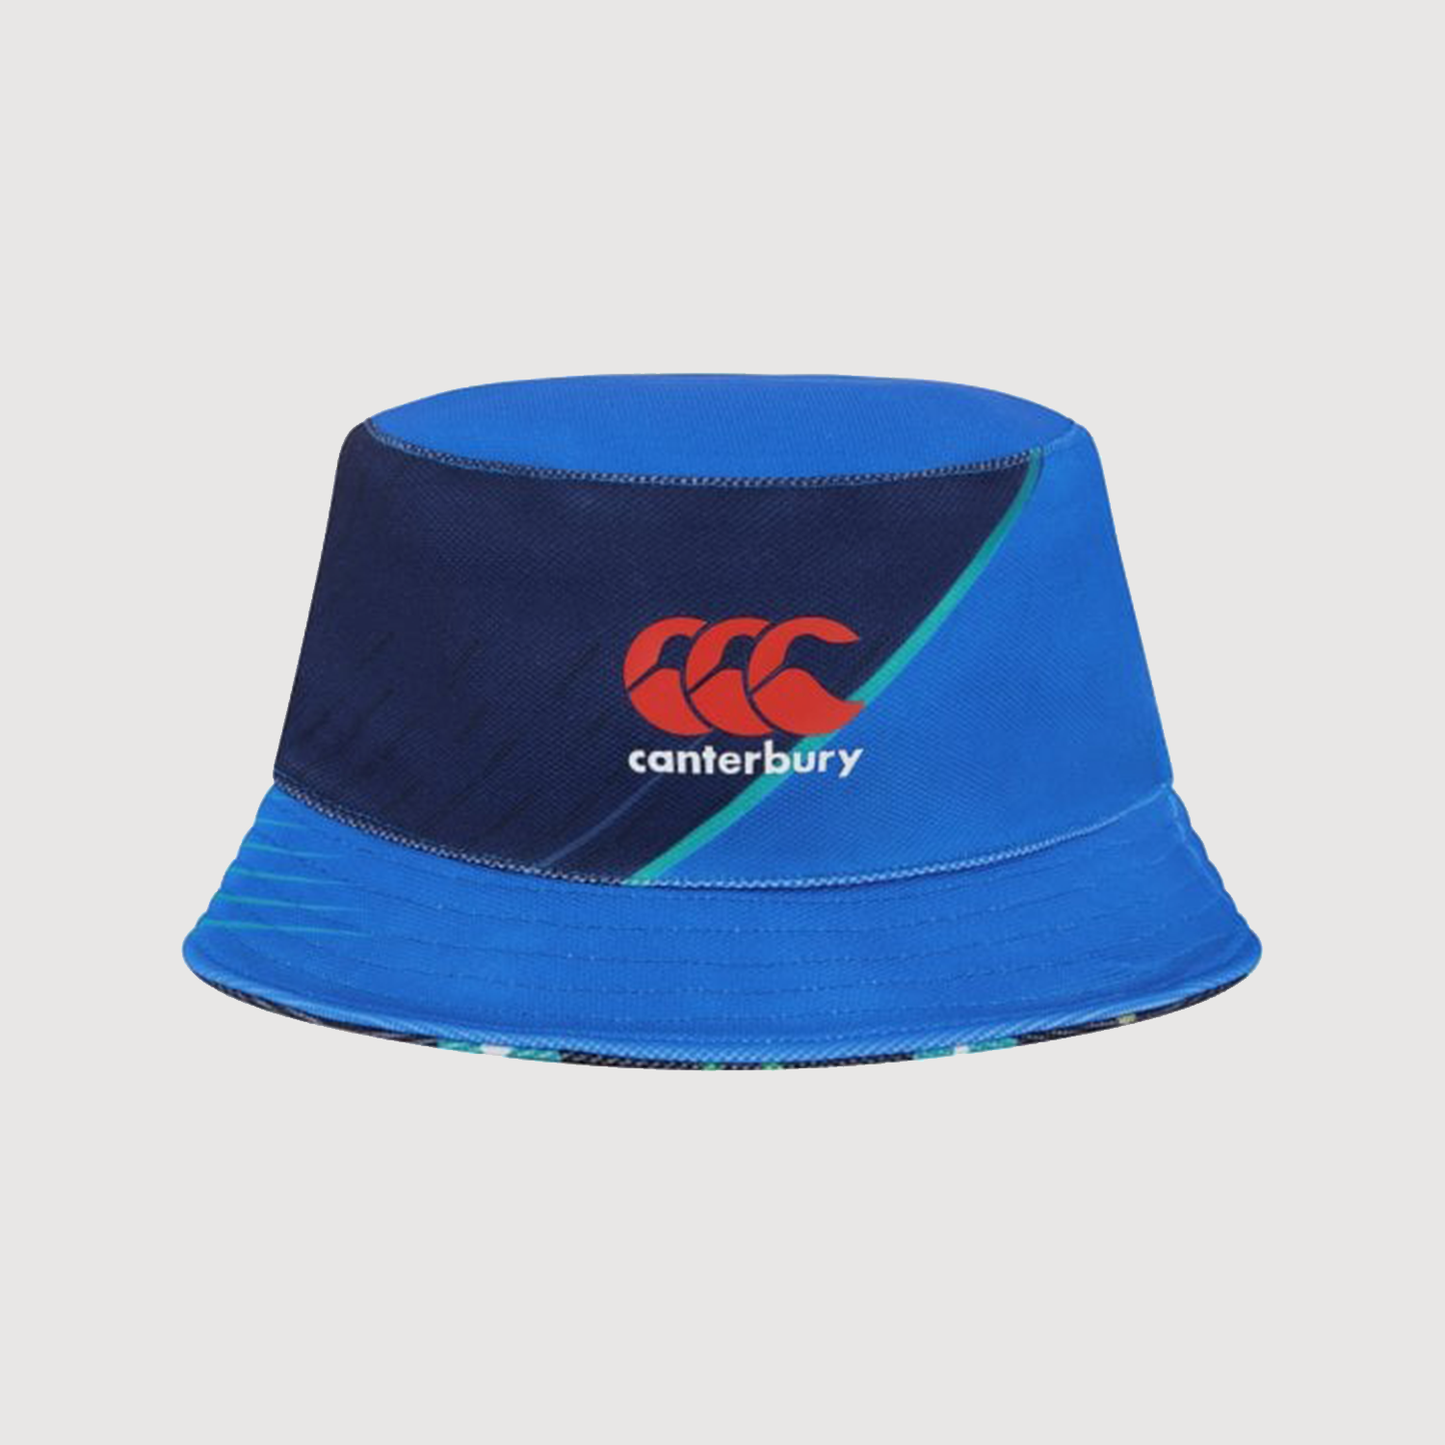 BLACKCAPS Supporters Bucket Hat – NZ Cricket Shop